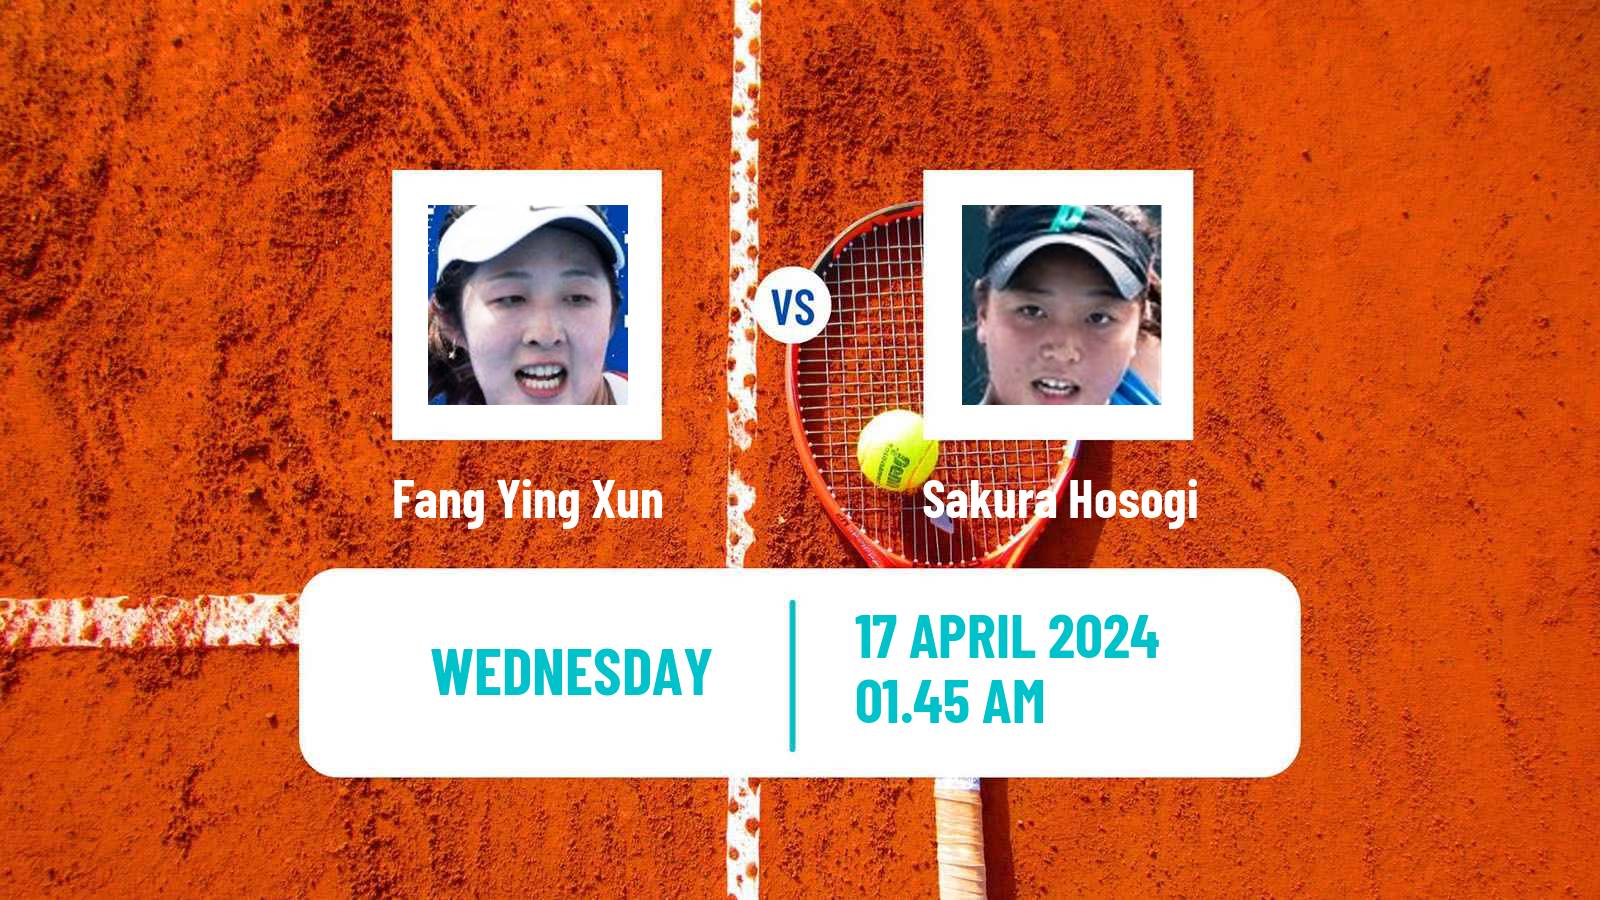 Tennis ITF W50 Shenzhen 2 Women Fang Ying Xun - Sakura Hosogi